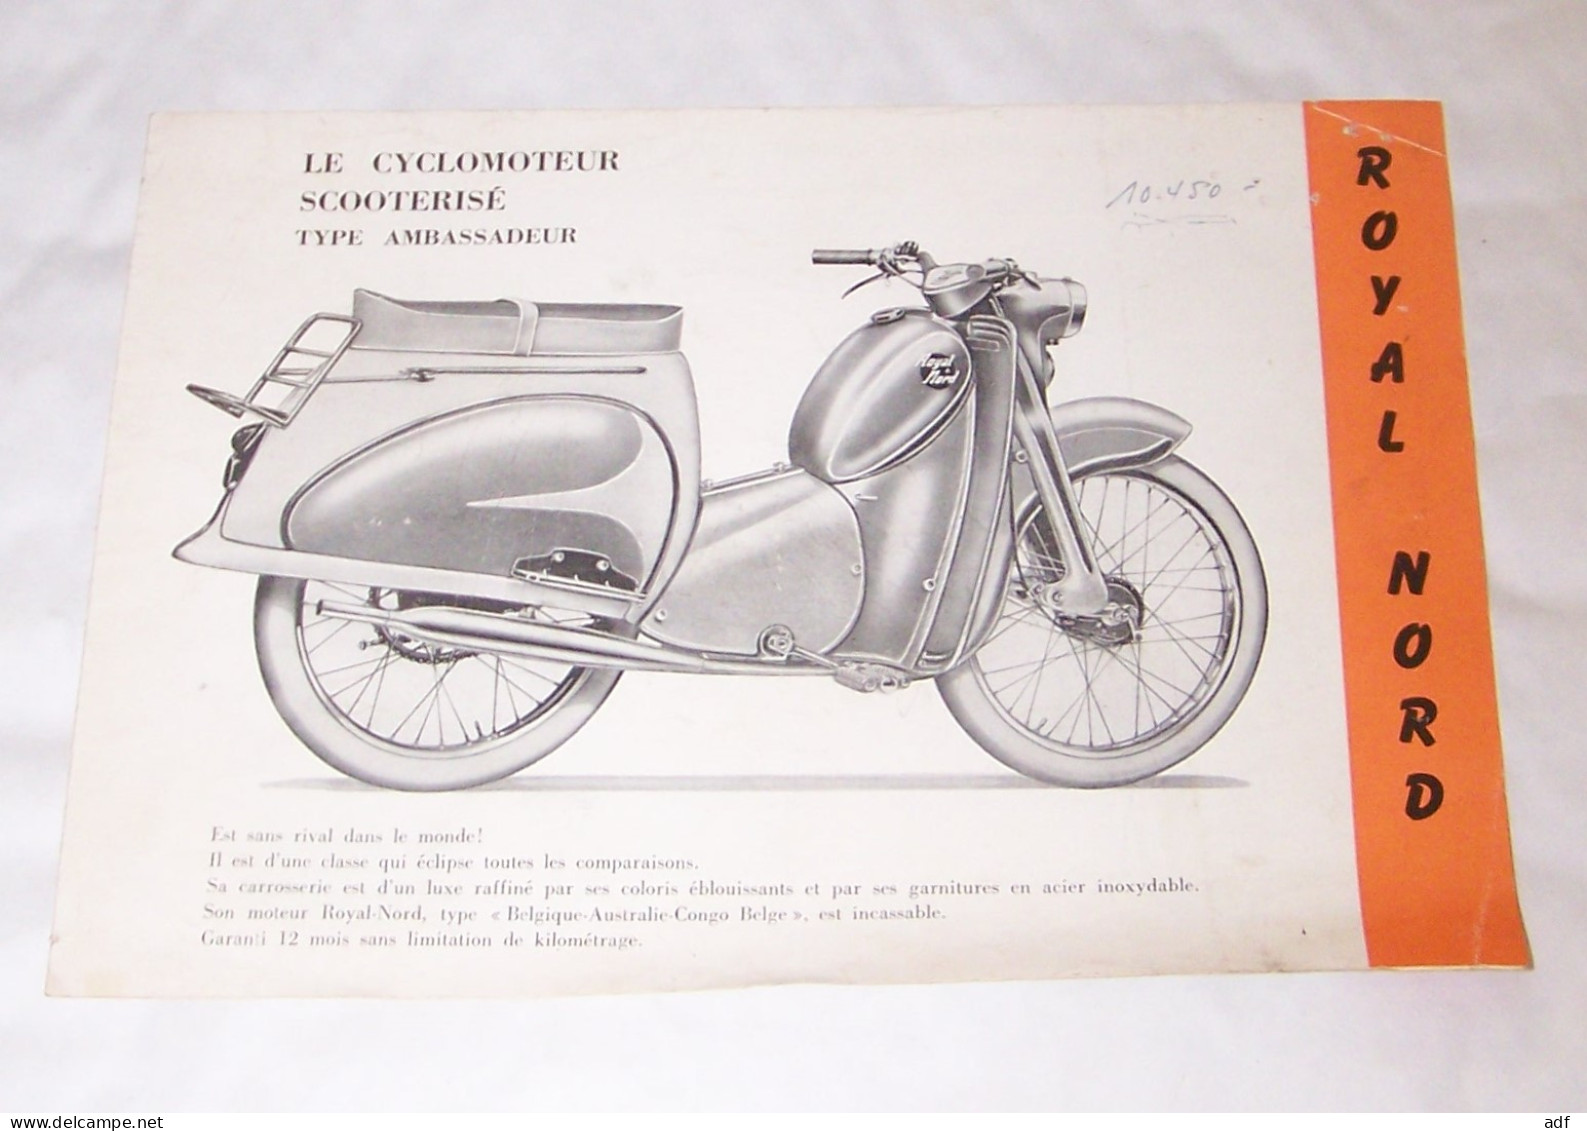 DEPLIANT PUB PUBLICITAIRE ROYAL NORD LE CYCLOMOTEUR CYCLO MOTEUR SCOOTERISE TYPE AMBASSADEUR, SCOOTER, SUPERLUXE 1959 - Moto